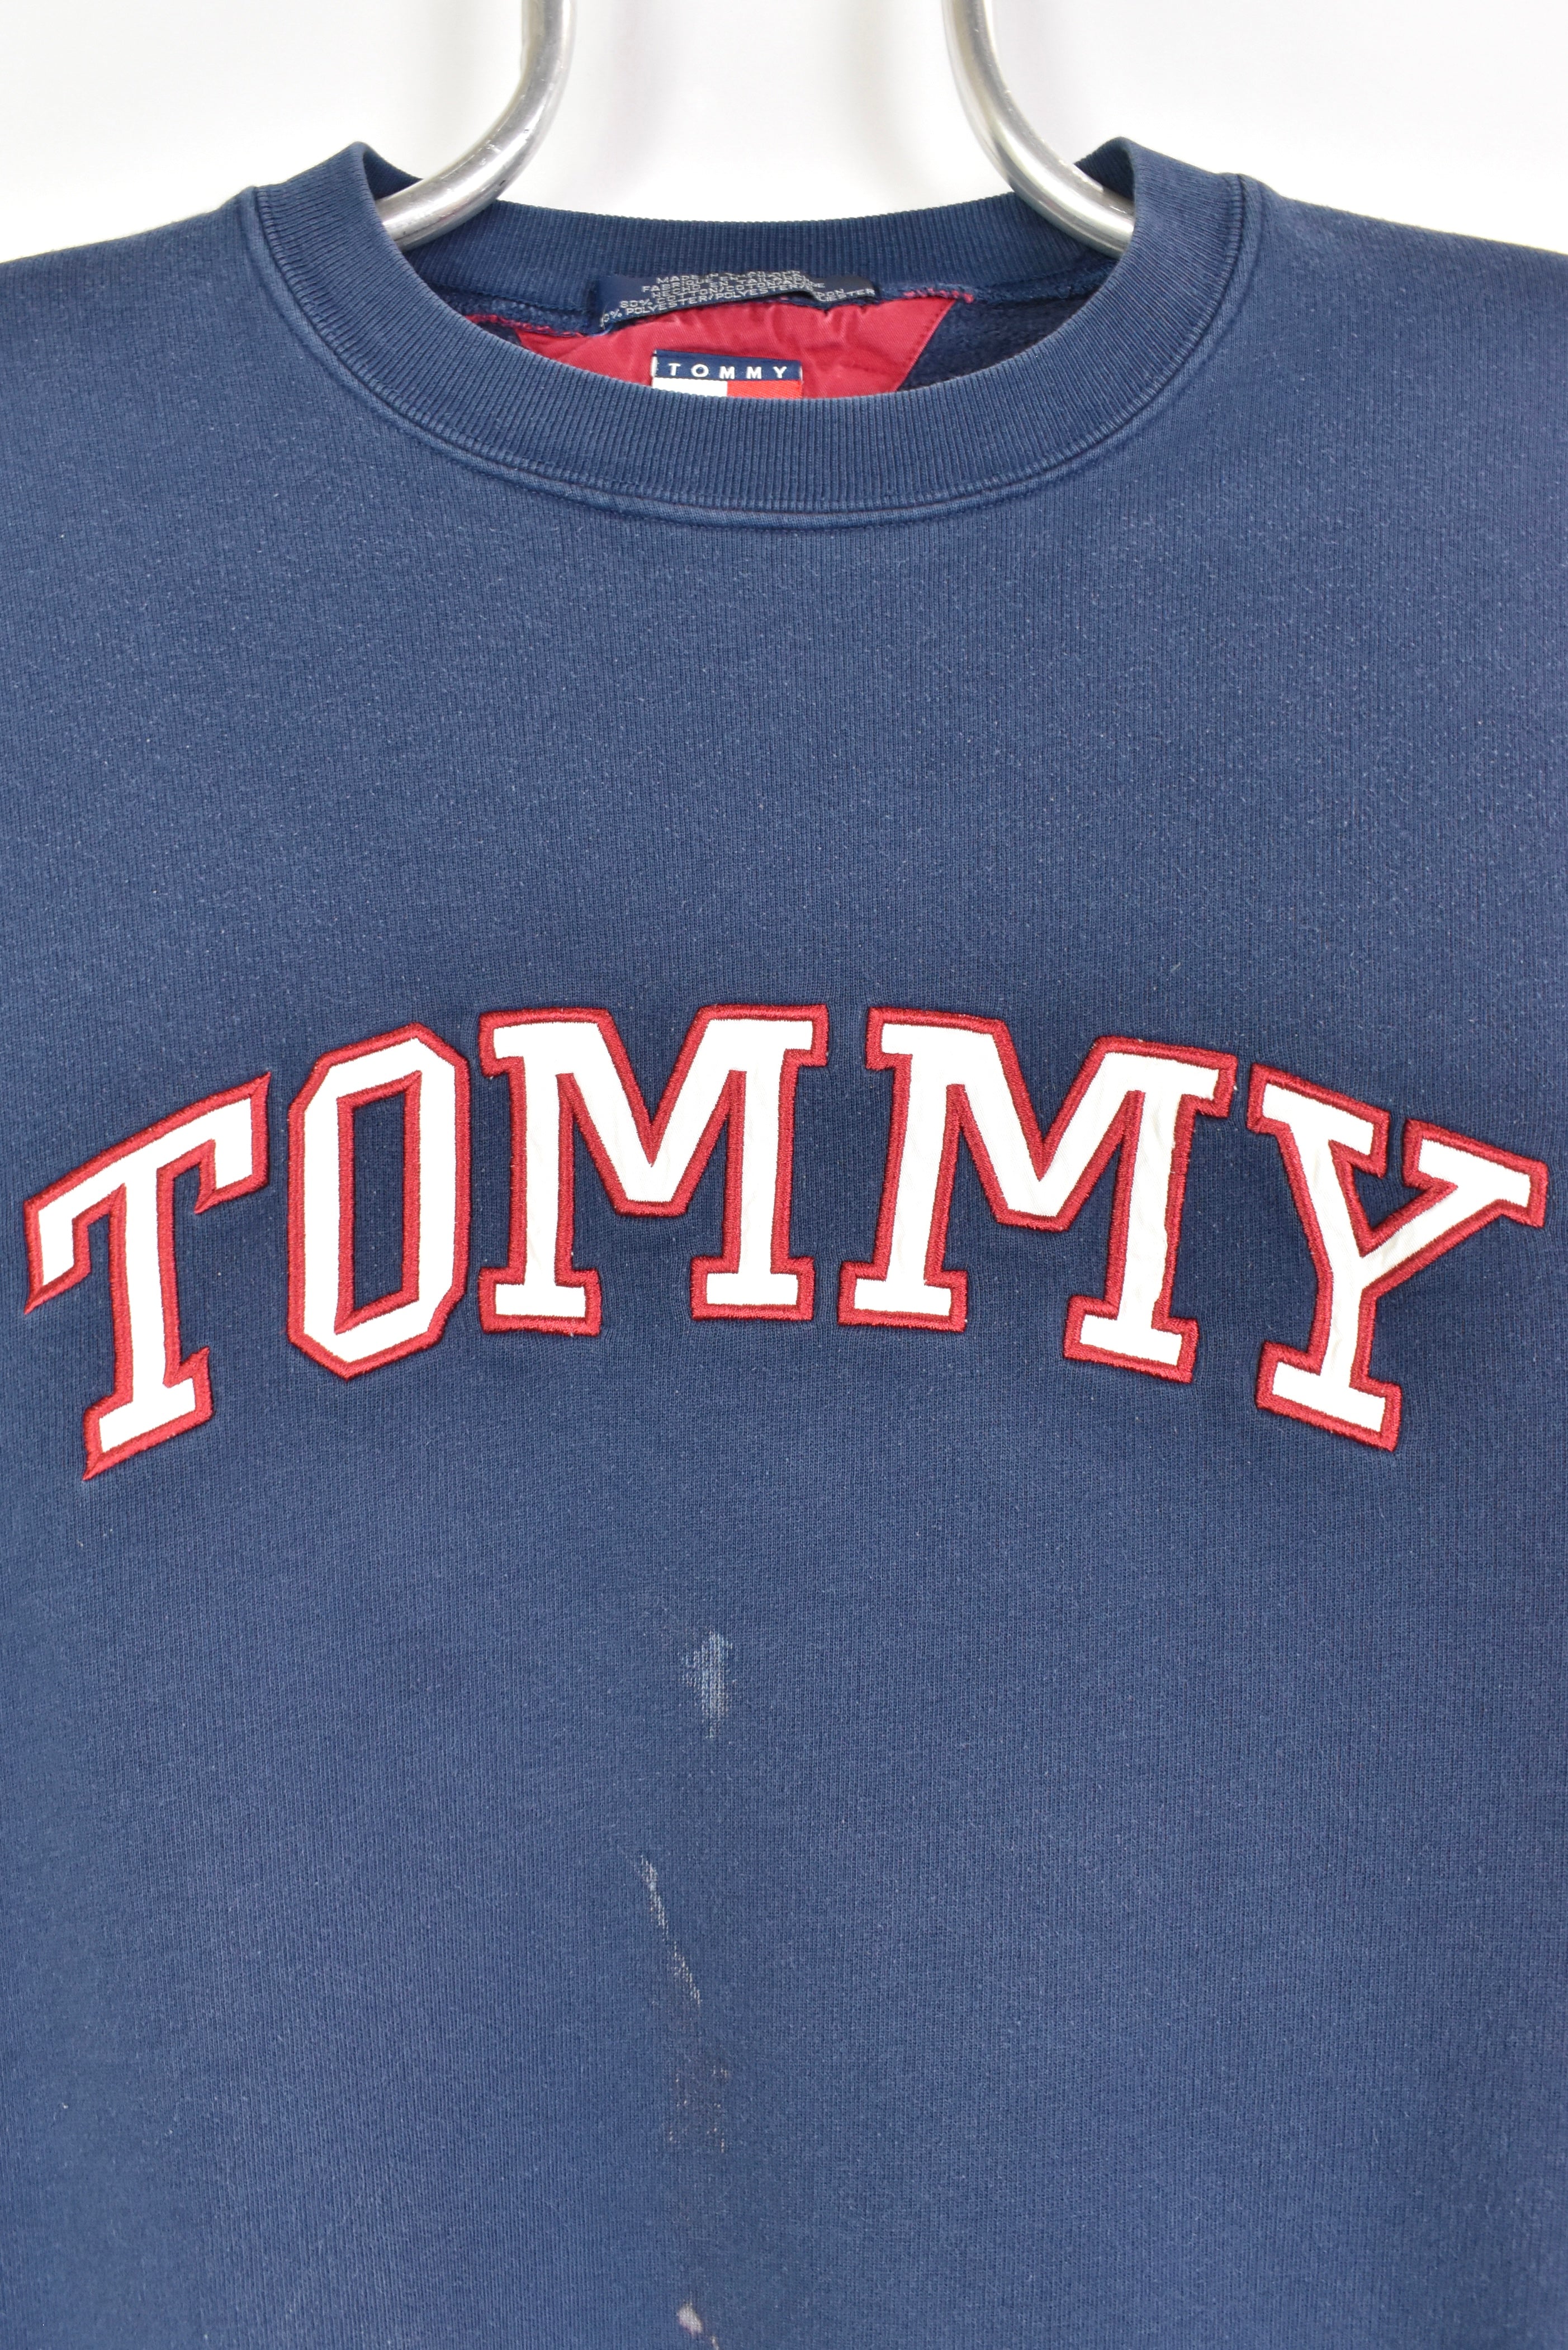 Vintage Tommy Hilfiger sweatshirt, navy blue embroidered crewneck - AU Large TOMMY HILFIGER